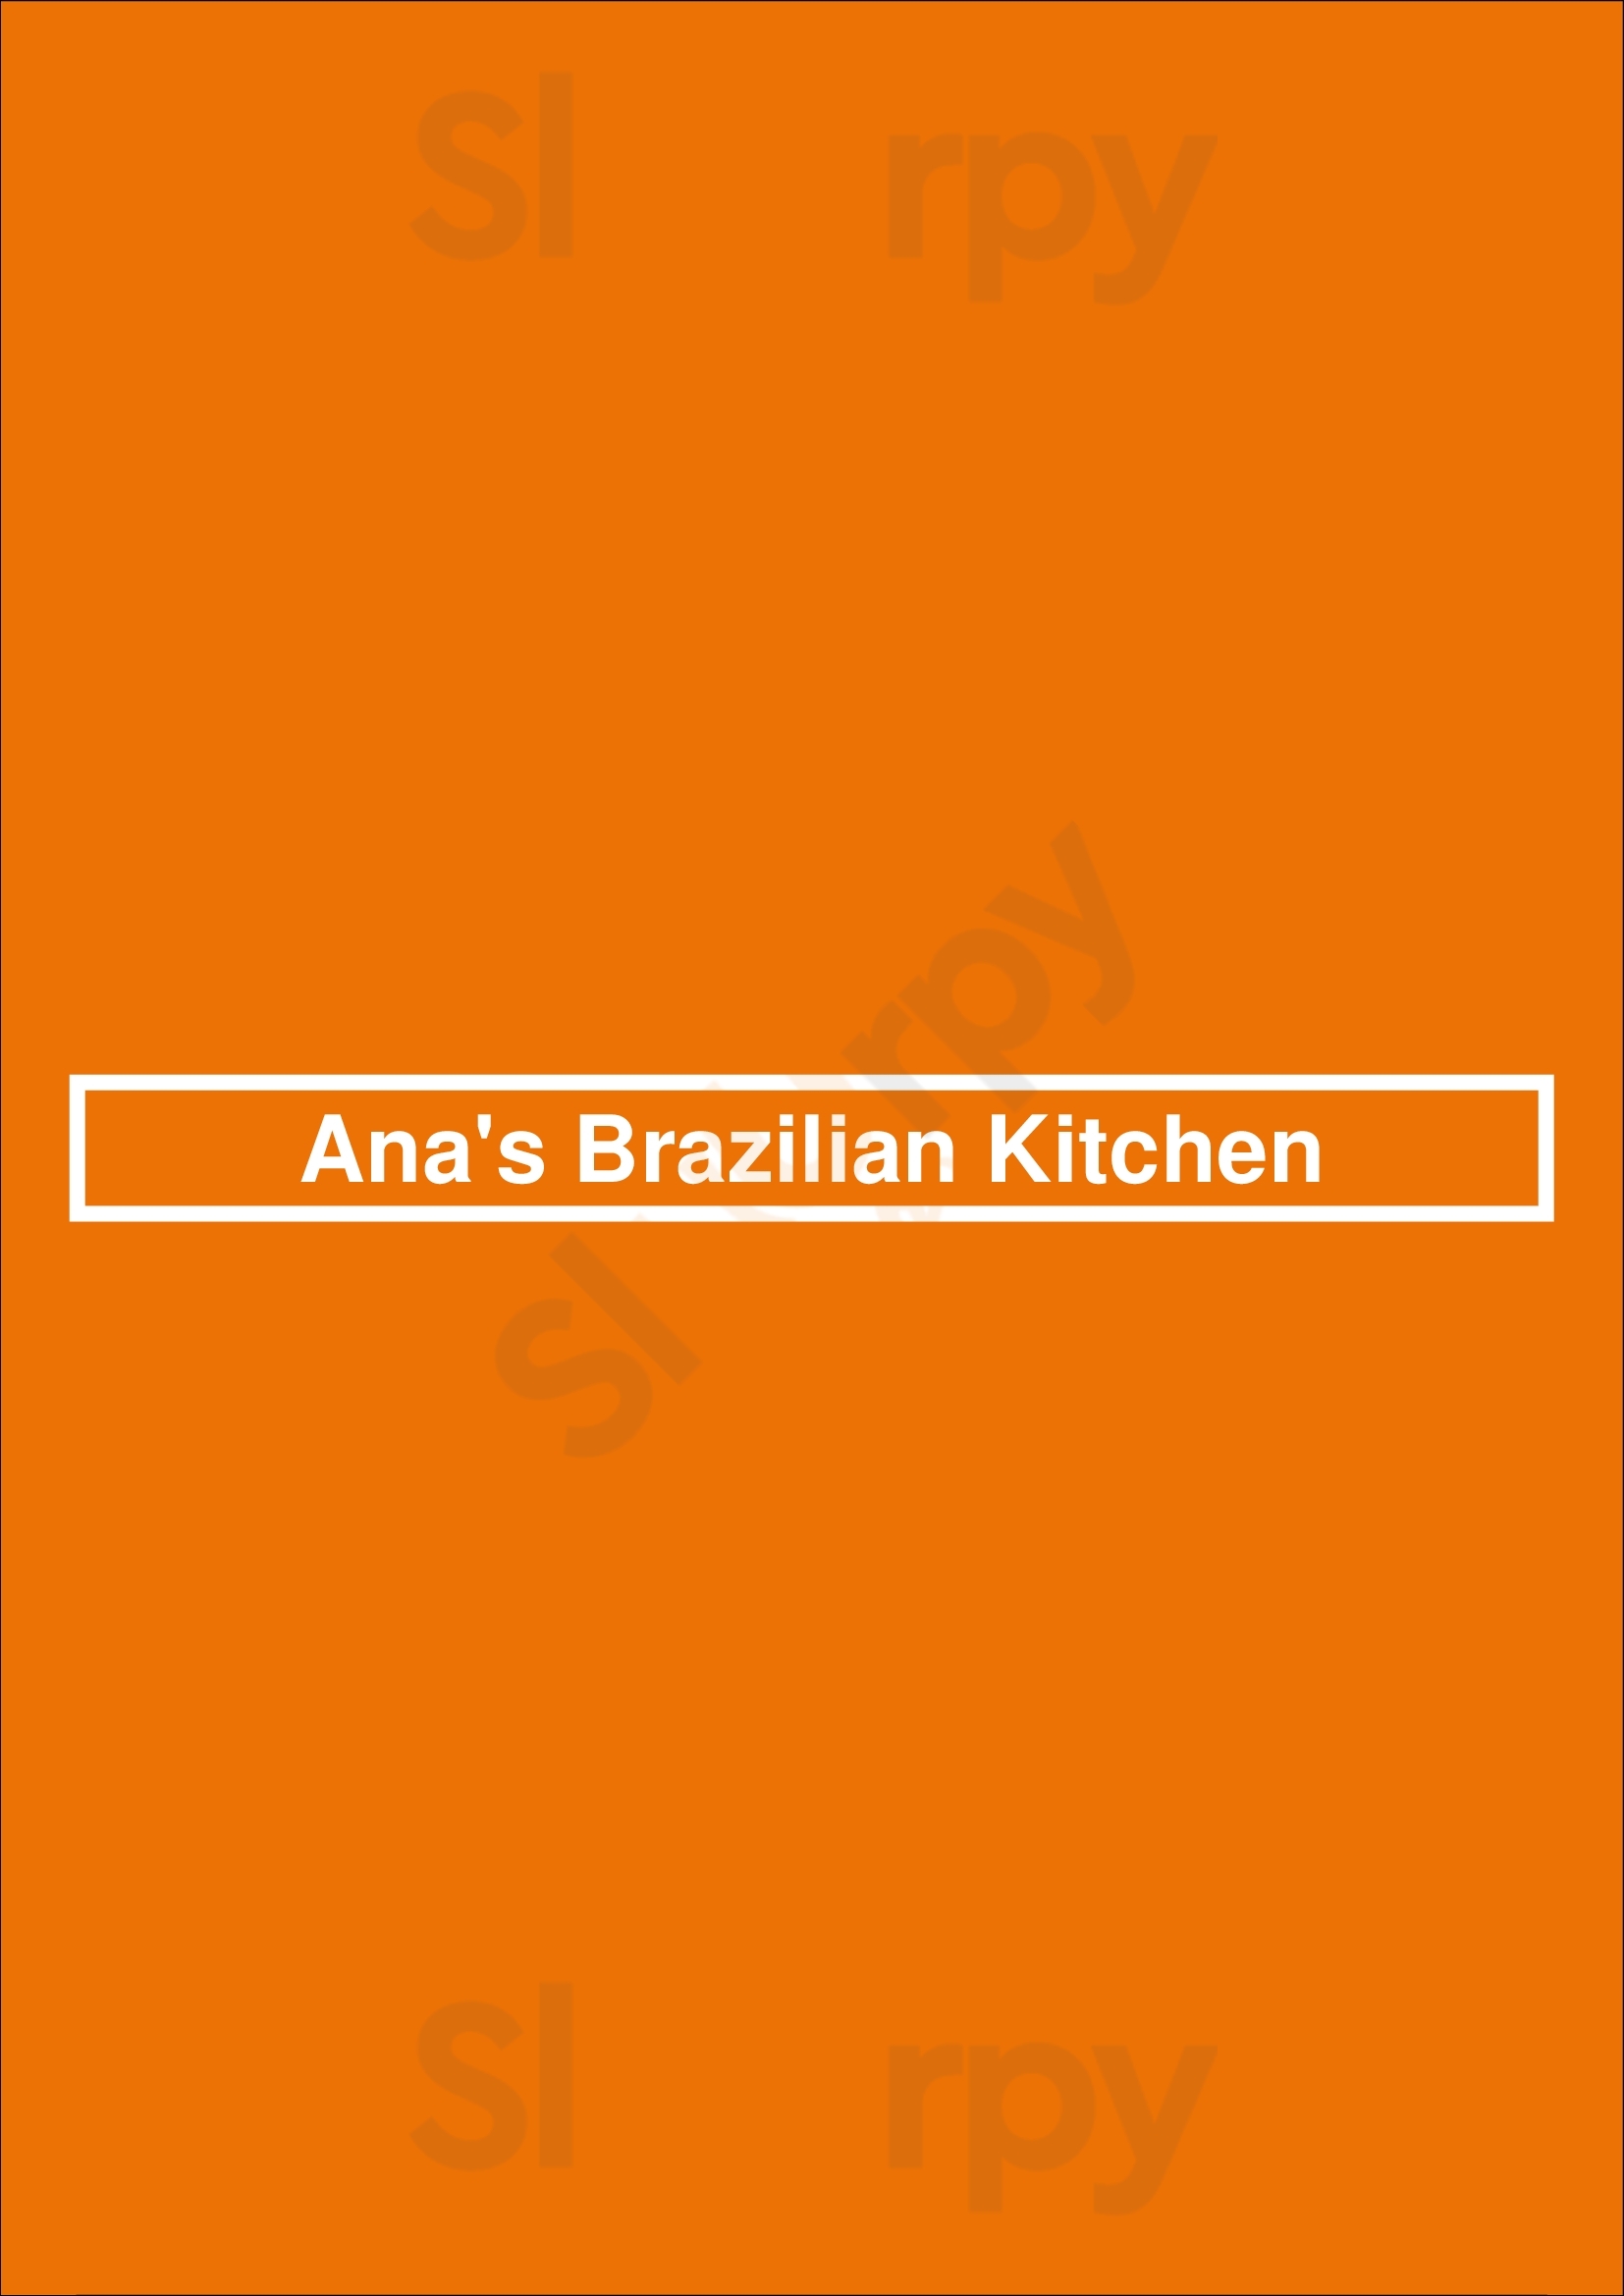 Ana's Brazilian Kitchen Orlando Menu - 1